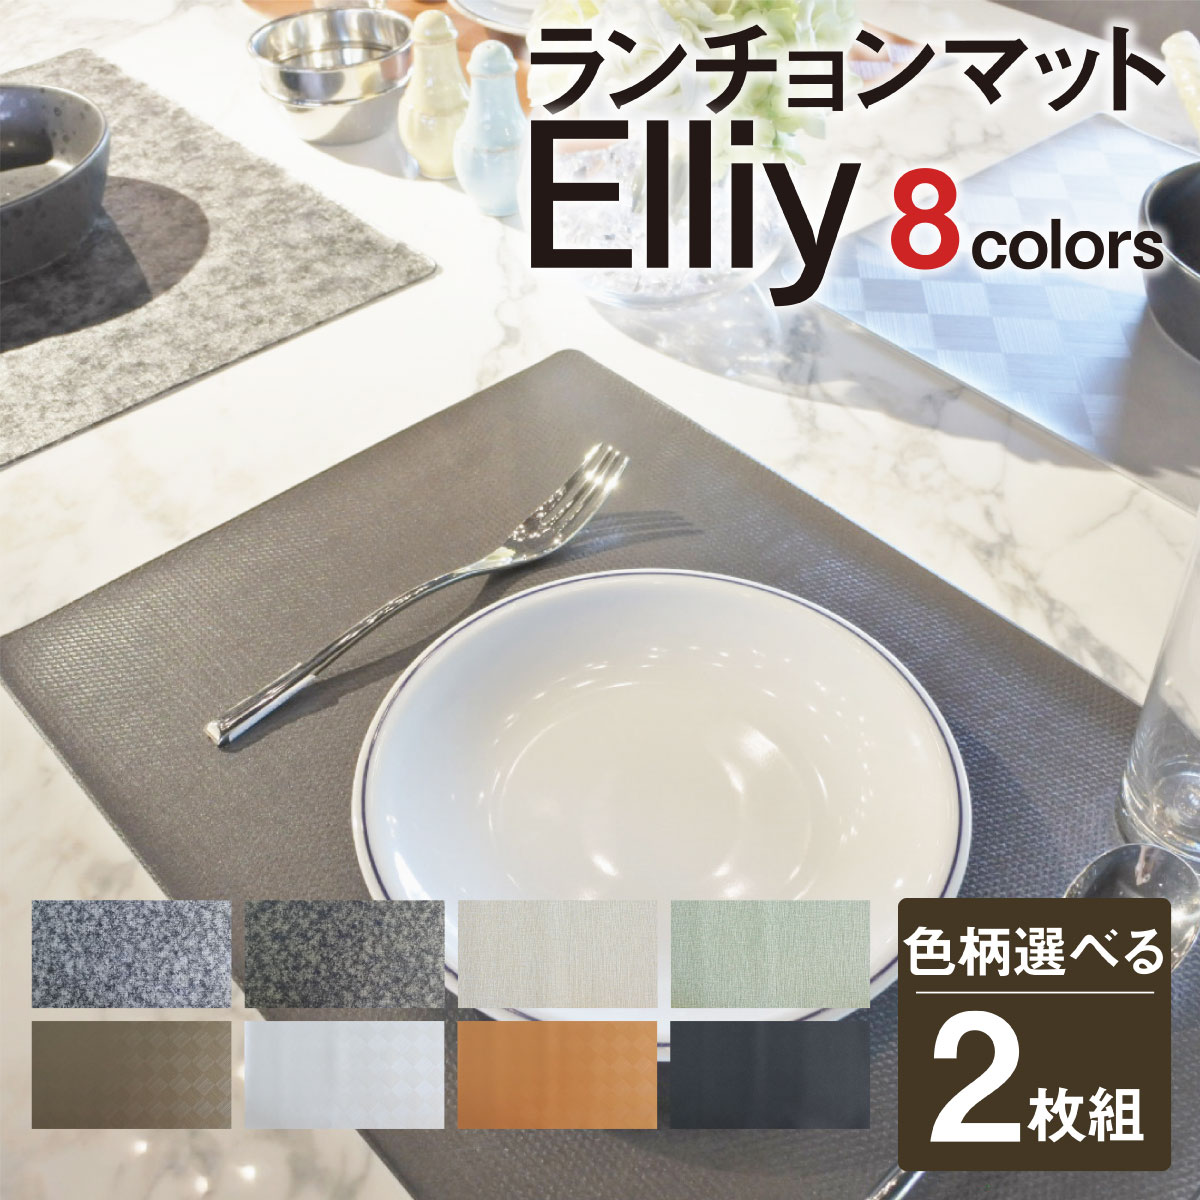 楽天市場 色柄選べる 2枚組 ランチョンマット 日本製 Elliy おしゃれランチョンマット 送料無料 プラスカーサ Casa